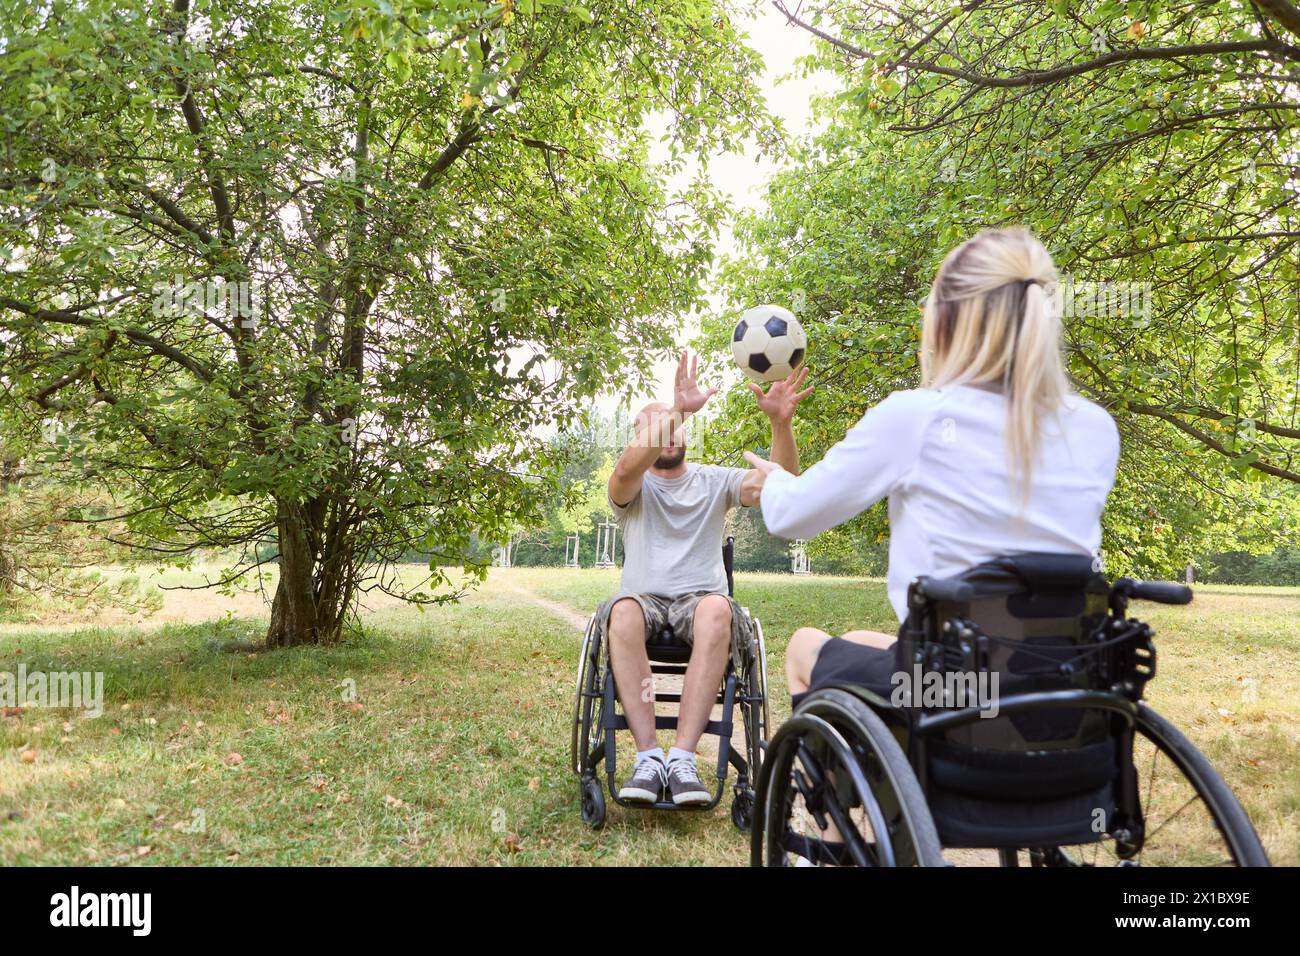 Una scena coinvolgente di inclusività e gioia, che cattura due persone su sedia a rotelle impegnate in una vivace partita di calcio in mezzo al verde lussureggiante in un parco tranquillo. Foto Stock